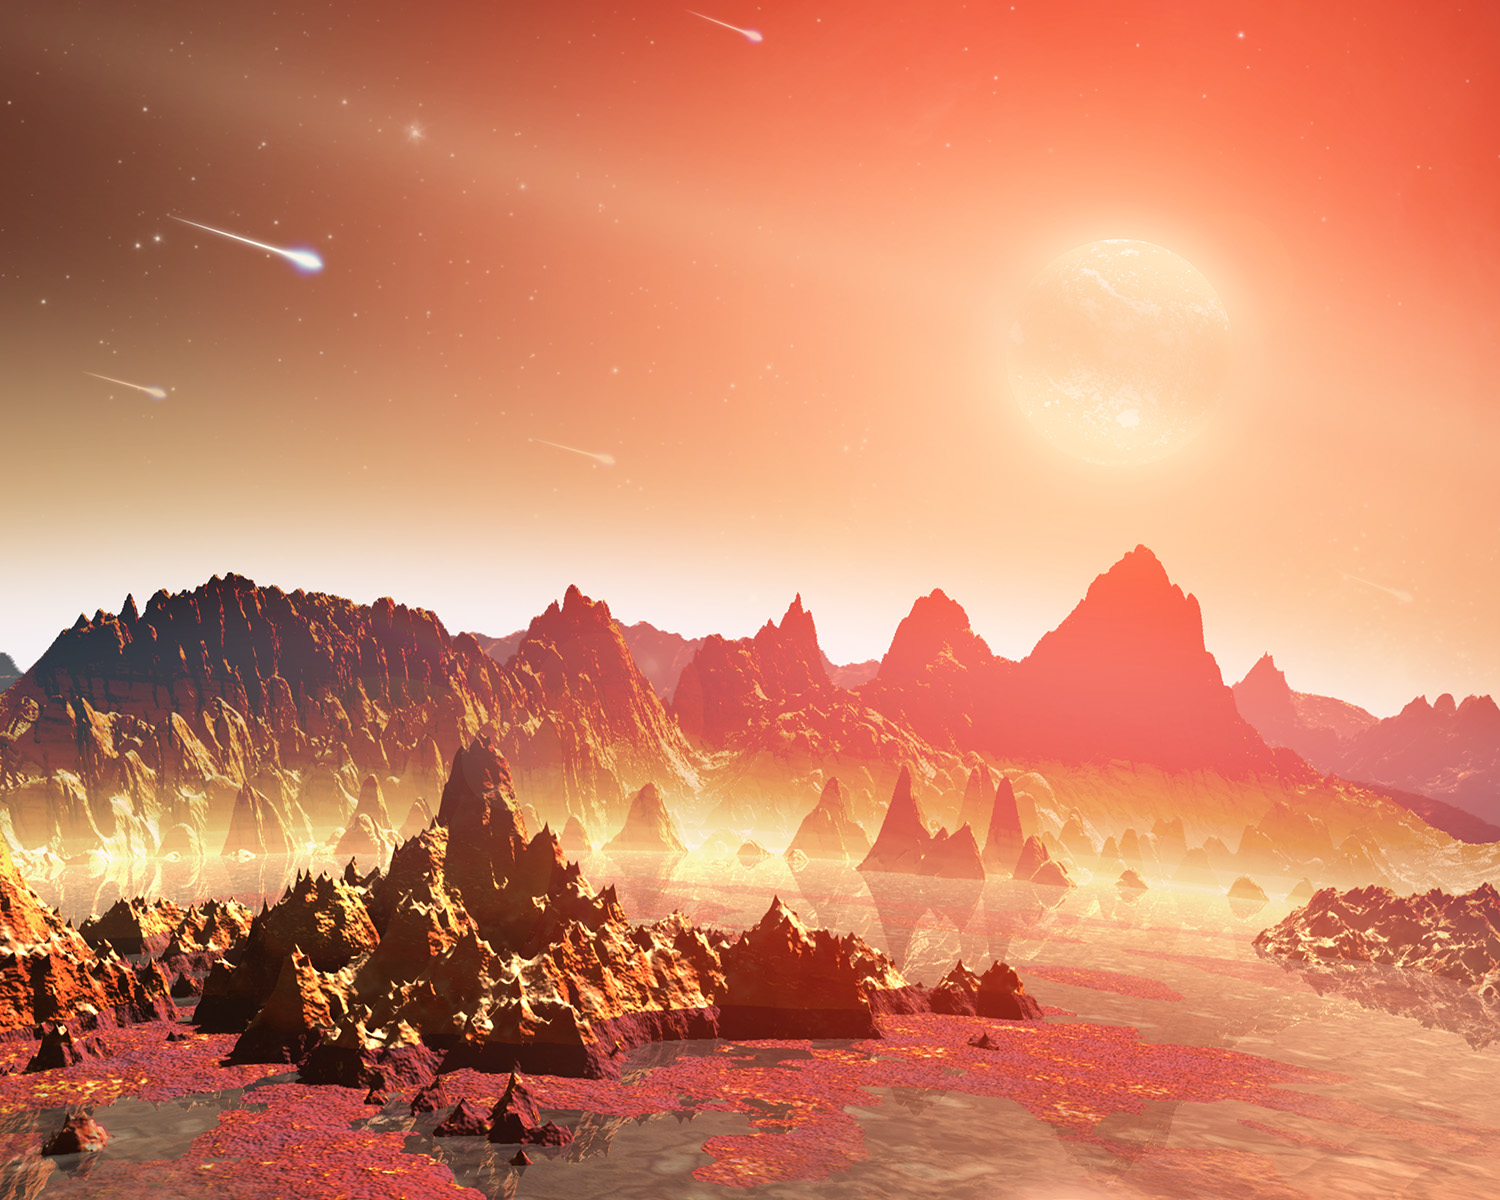 Felsenlandschaft auf einem jungen Exoplaneten. Am Himmel sind eine riesige Sonne und herabstürzende Meteoriten zu sehen.